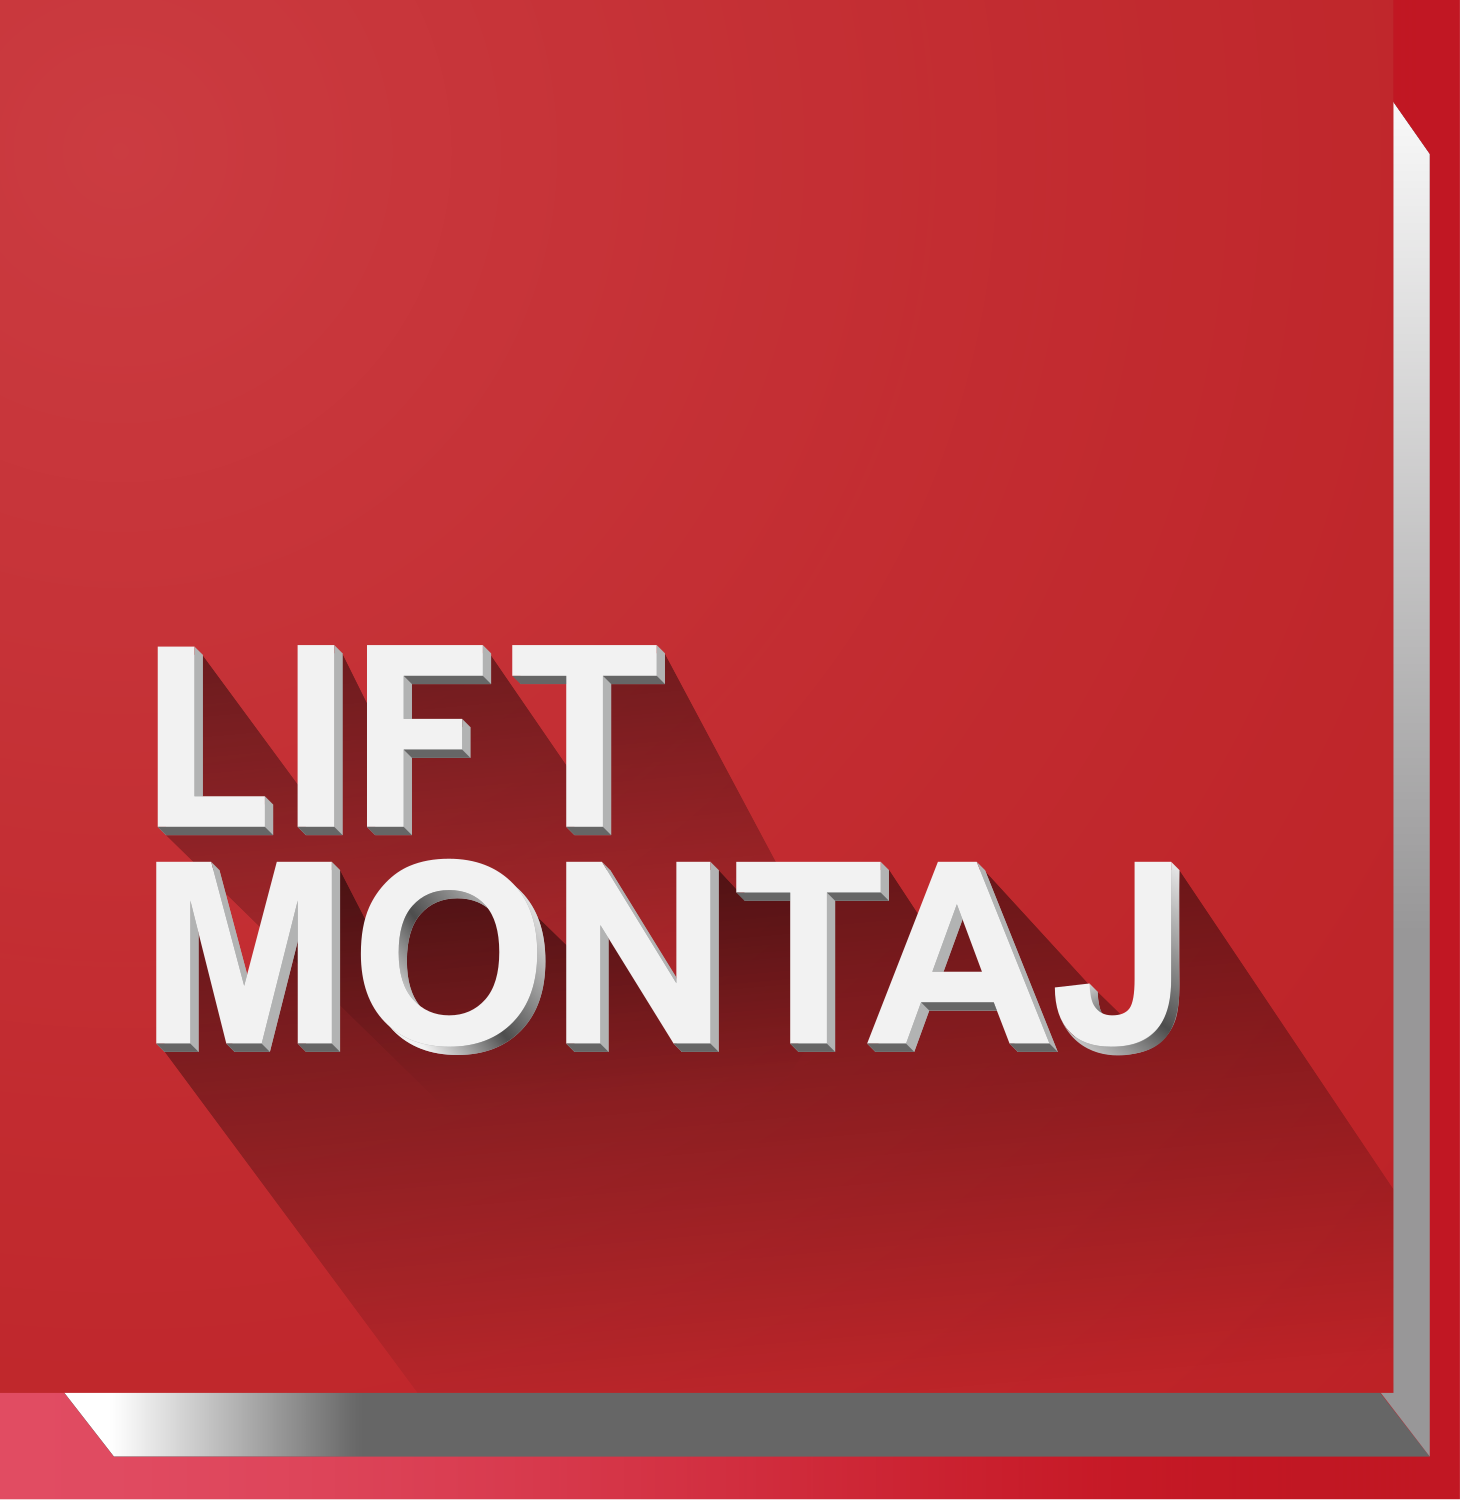 Компания  Liftmontaj  основана в 1973 году. За период в более чем 45 лет накоплен колоссальный опыт в сфере монтажа и облуживания грузоподъёмного оборудования различной сложности.